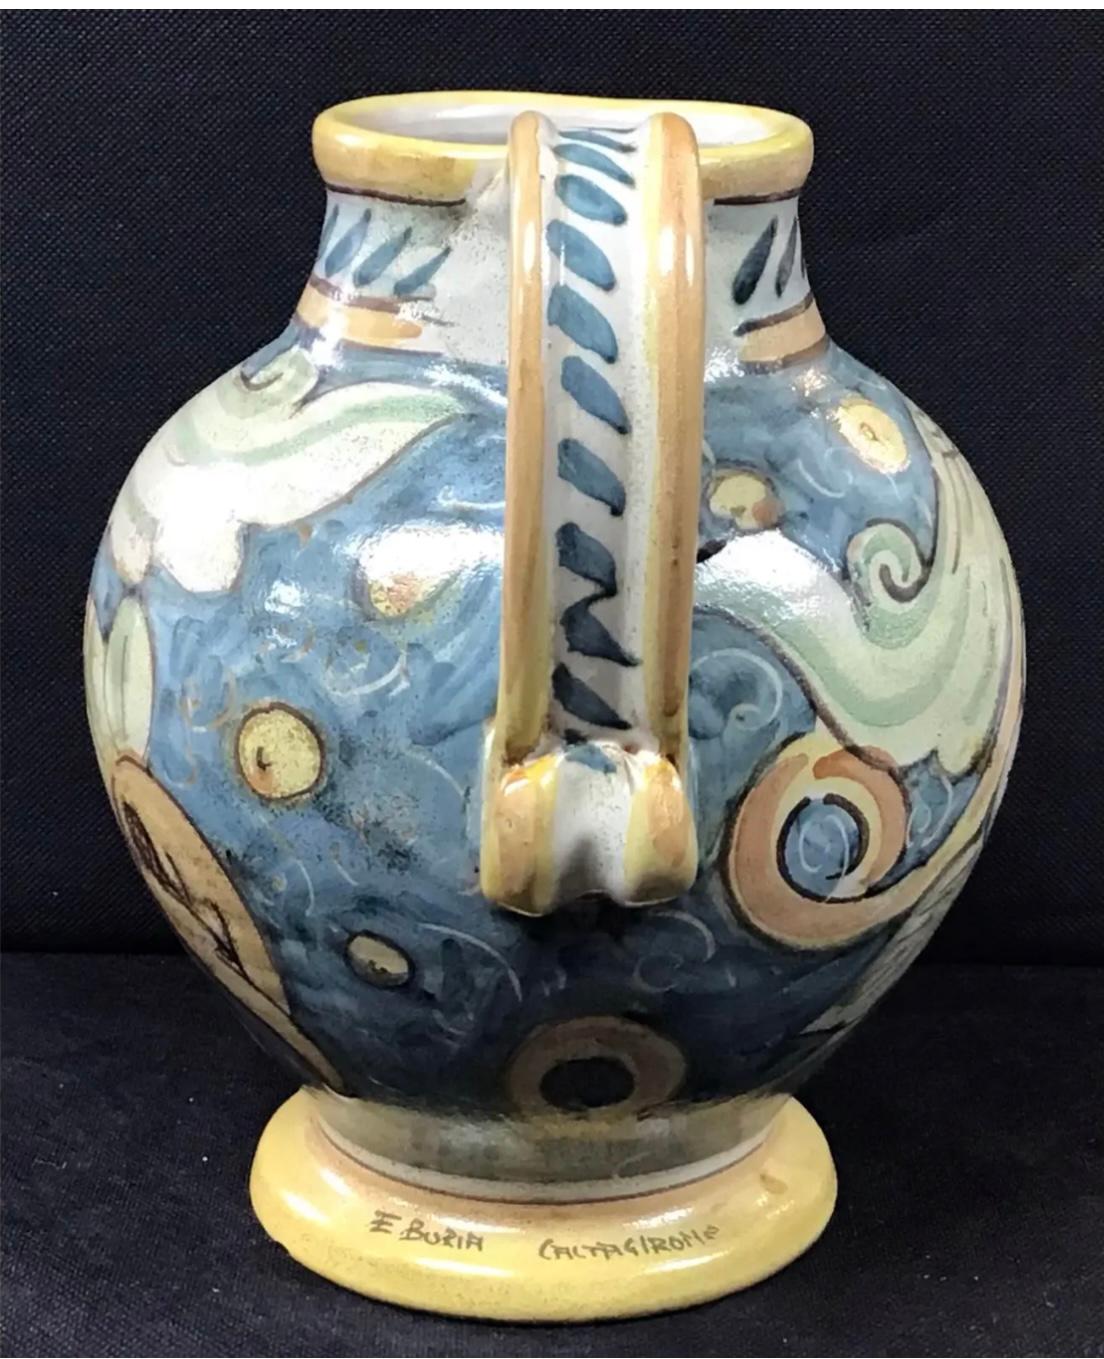 Ein eindrucksvoll geformtes, antikes, handbemaltes Keramikgefäß aus Faenza Majolika. Hergestellt in den frühen 1900er Jahren. Die Kanne ist mit einem farbenfrohen floralen und abstrakten Design verziert. Das Gefäß ist in einem ausgezeichneten